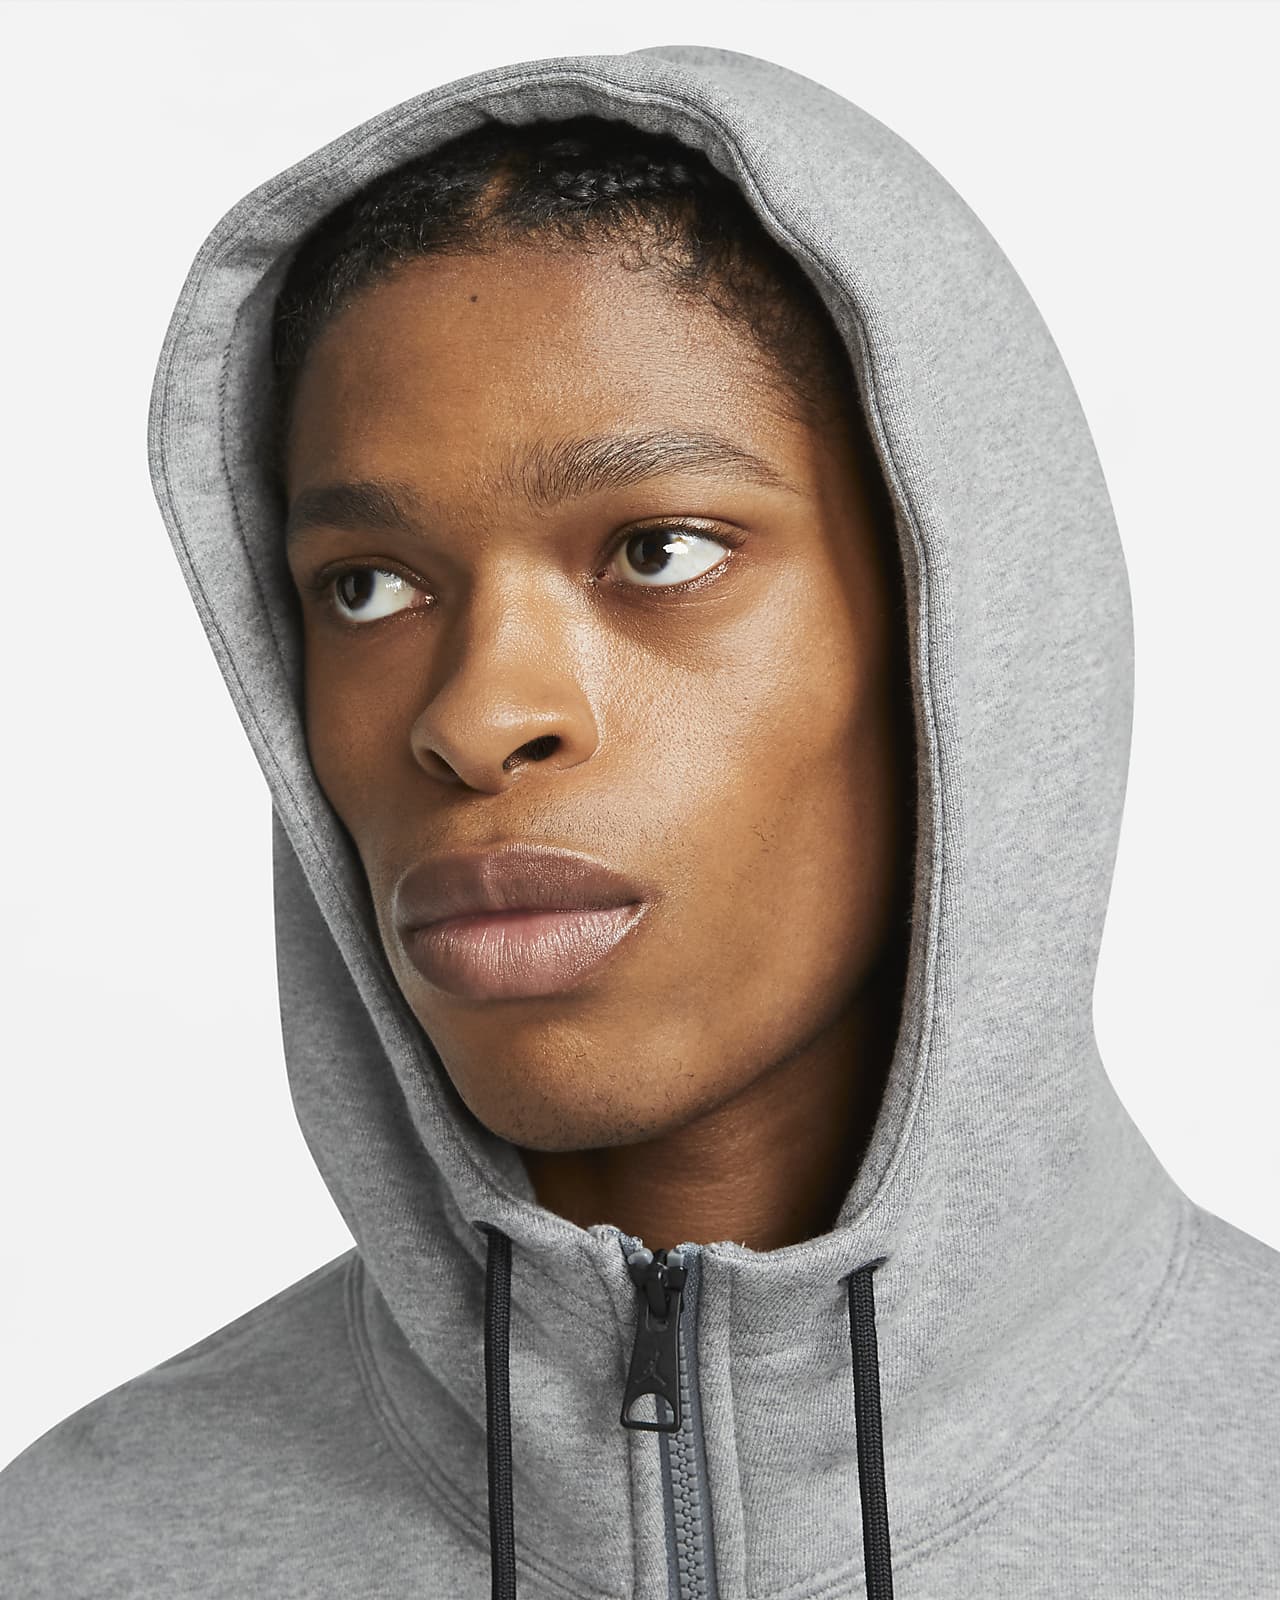 Jordan Essentials Men's Fleece Full-Zip Hoodie